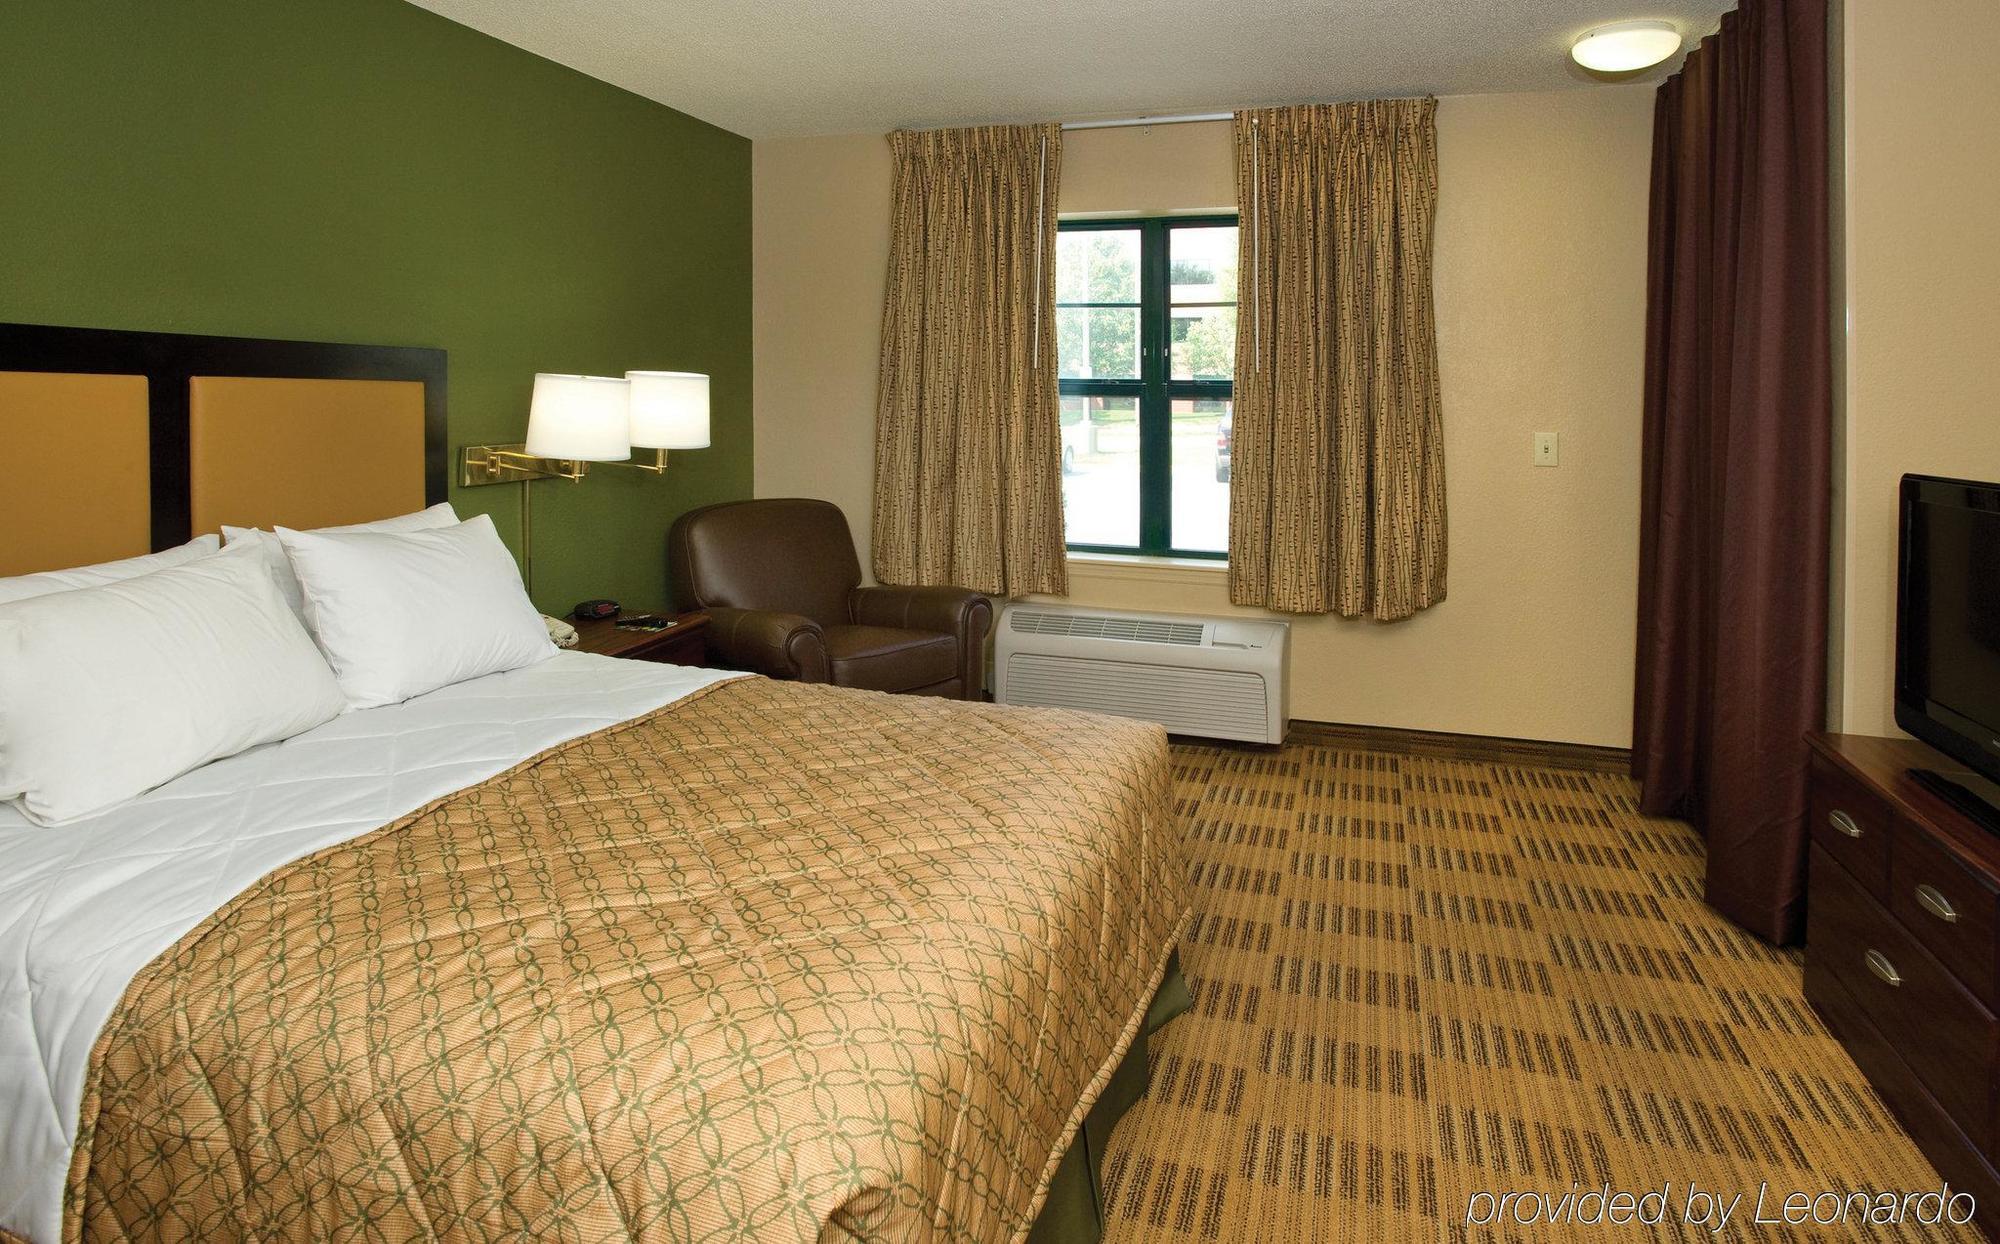 Extended Stay America Suites - Philadelphia - Horsham - Dresher Rd Room photo